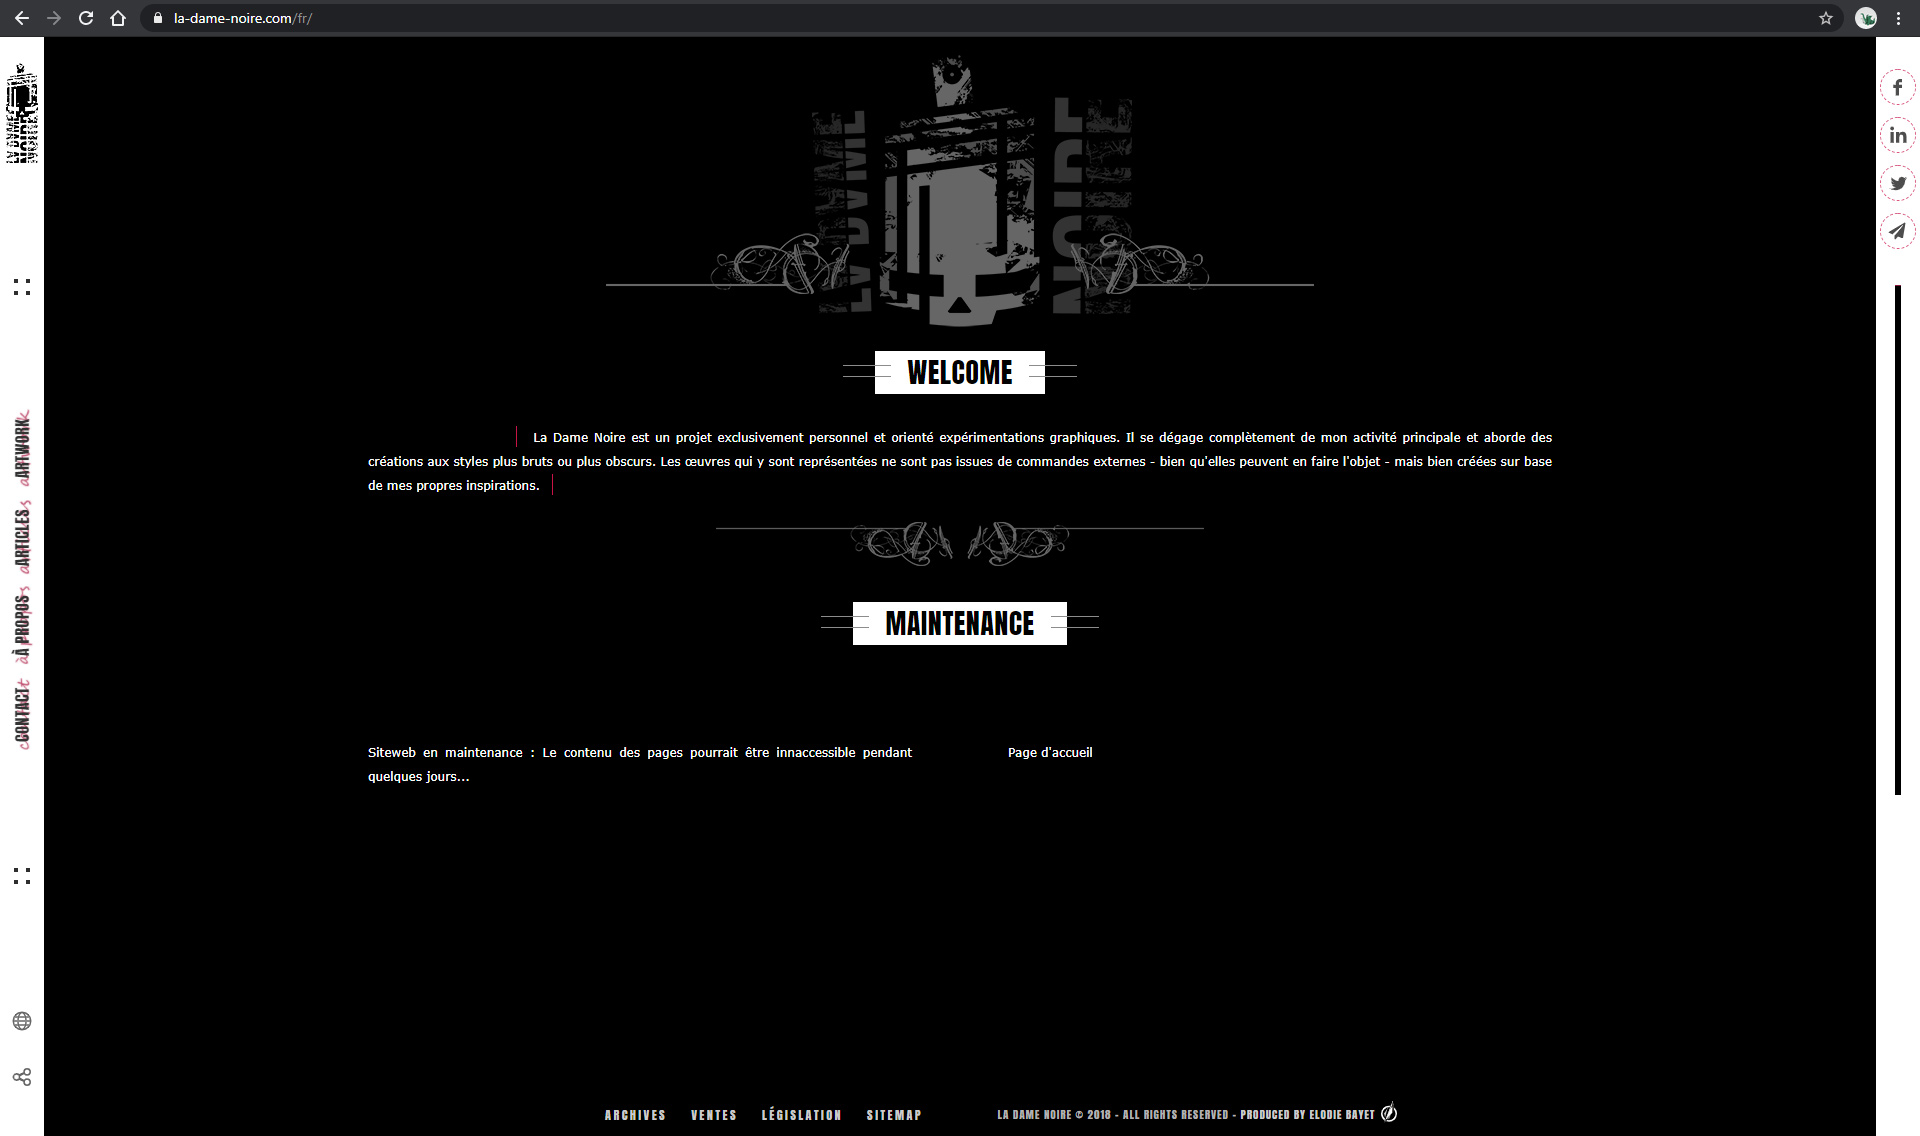 Home page of the website La-Dame-Noire.com